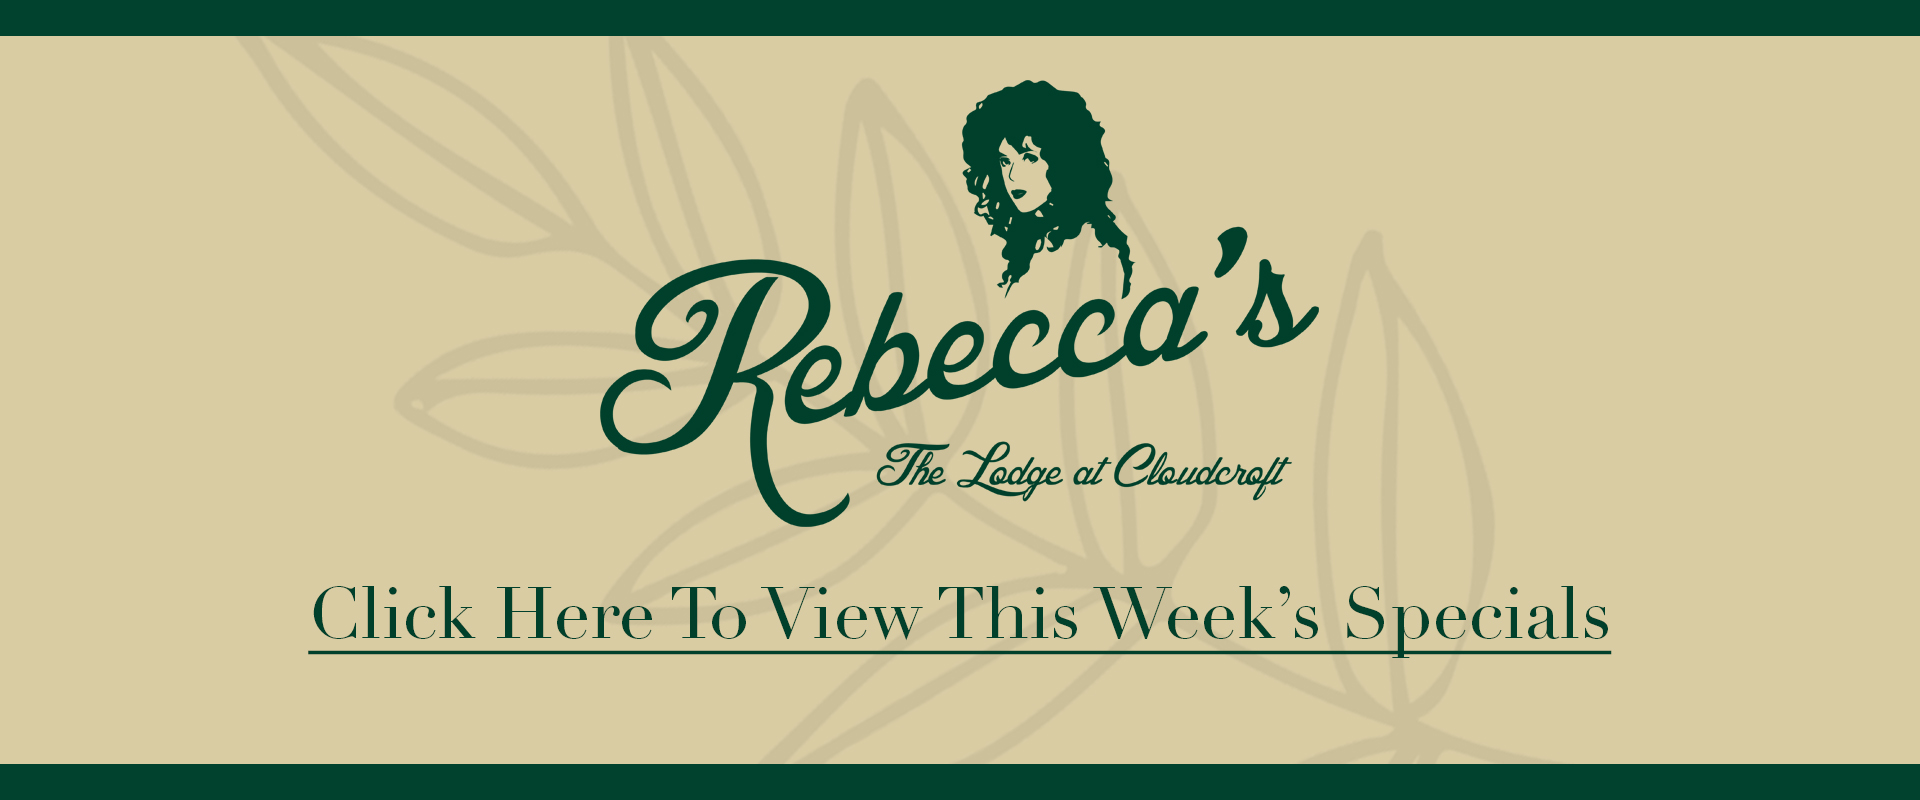 Rebecca's Week specials